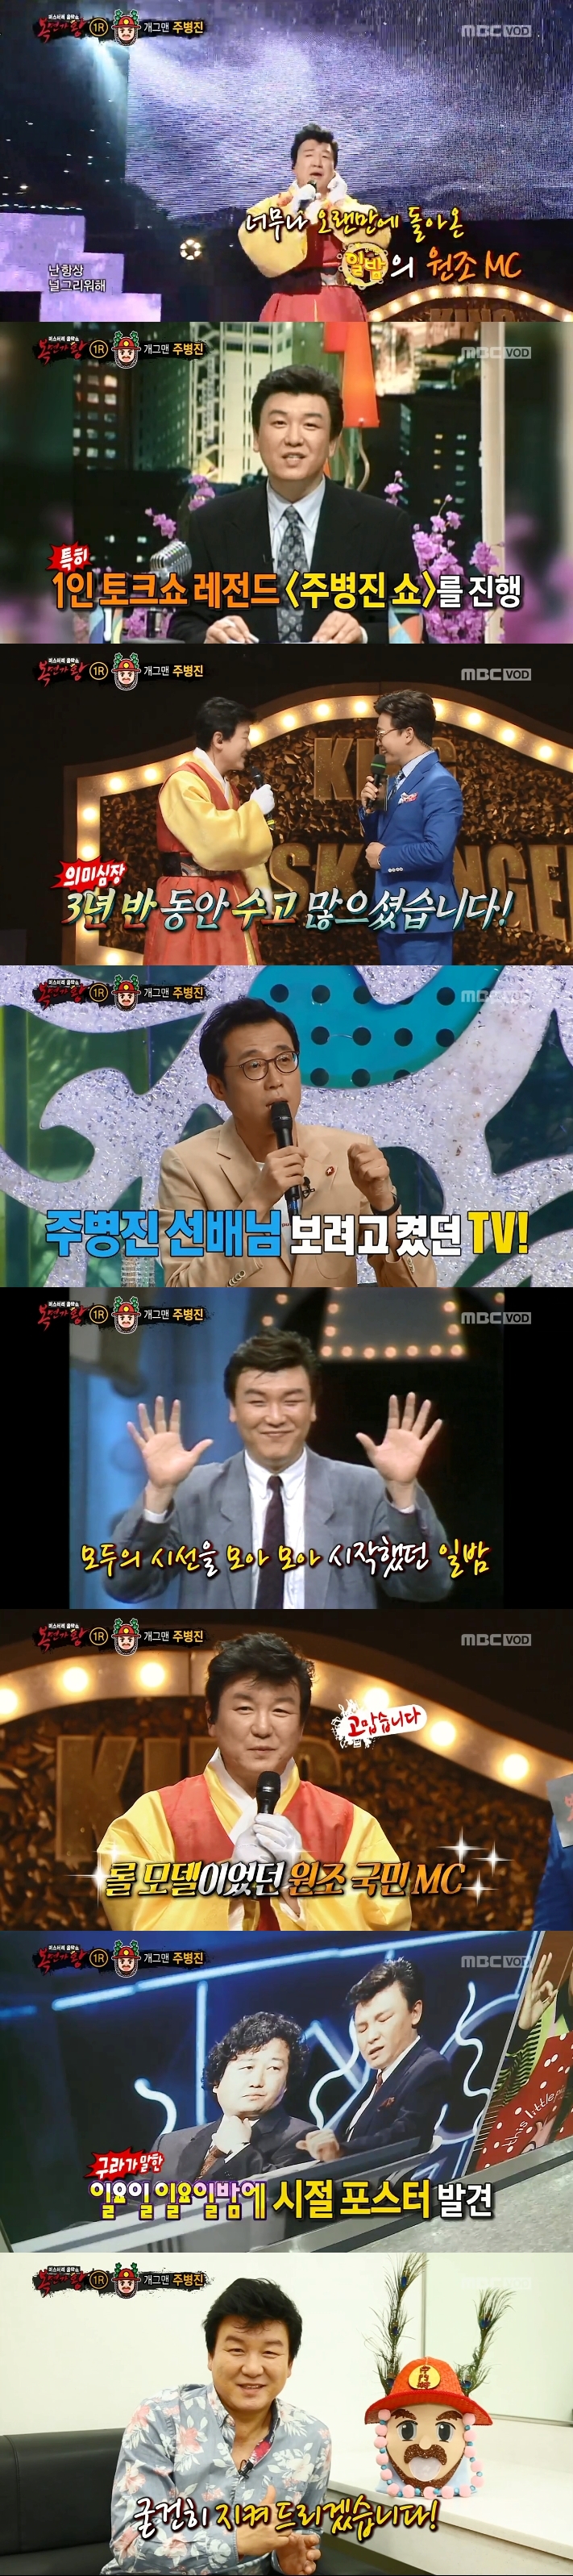 [Y피플] '복면가왕' 주병진, 20년 만에 돌아온 '일밤' 원조 MC 